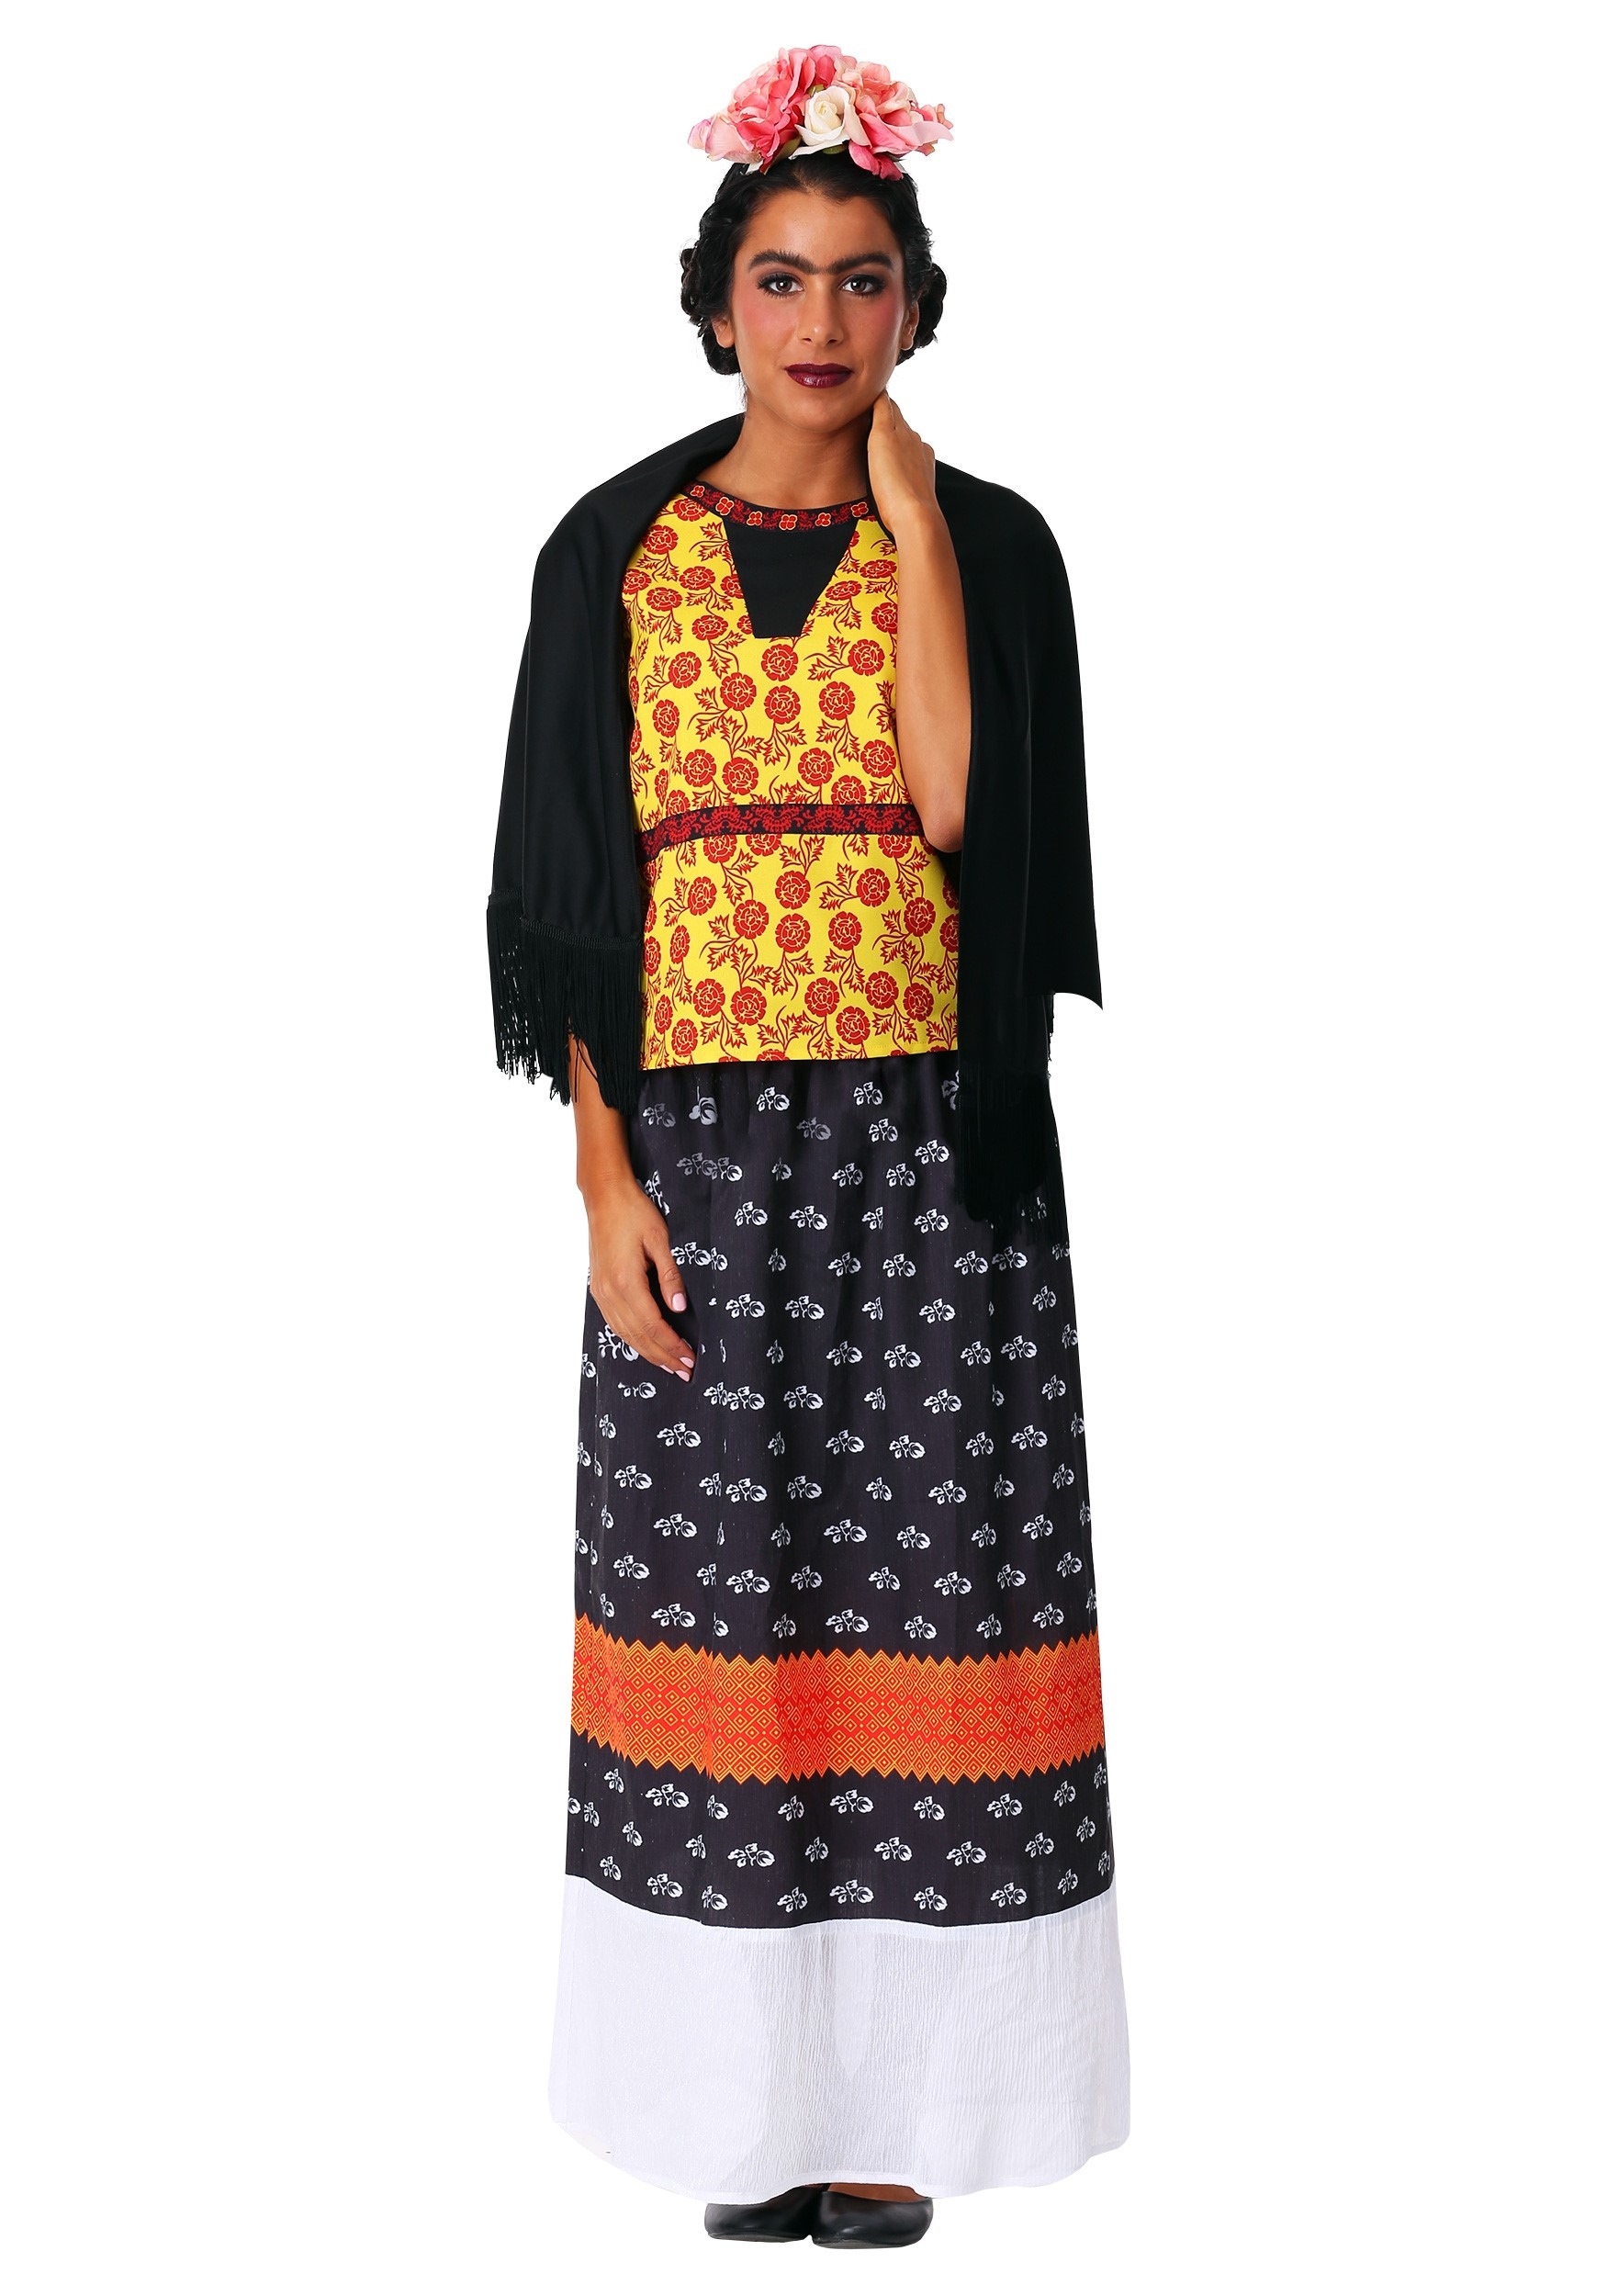 Frida Kahlo Women's Fancy Dress Costume